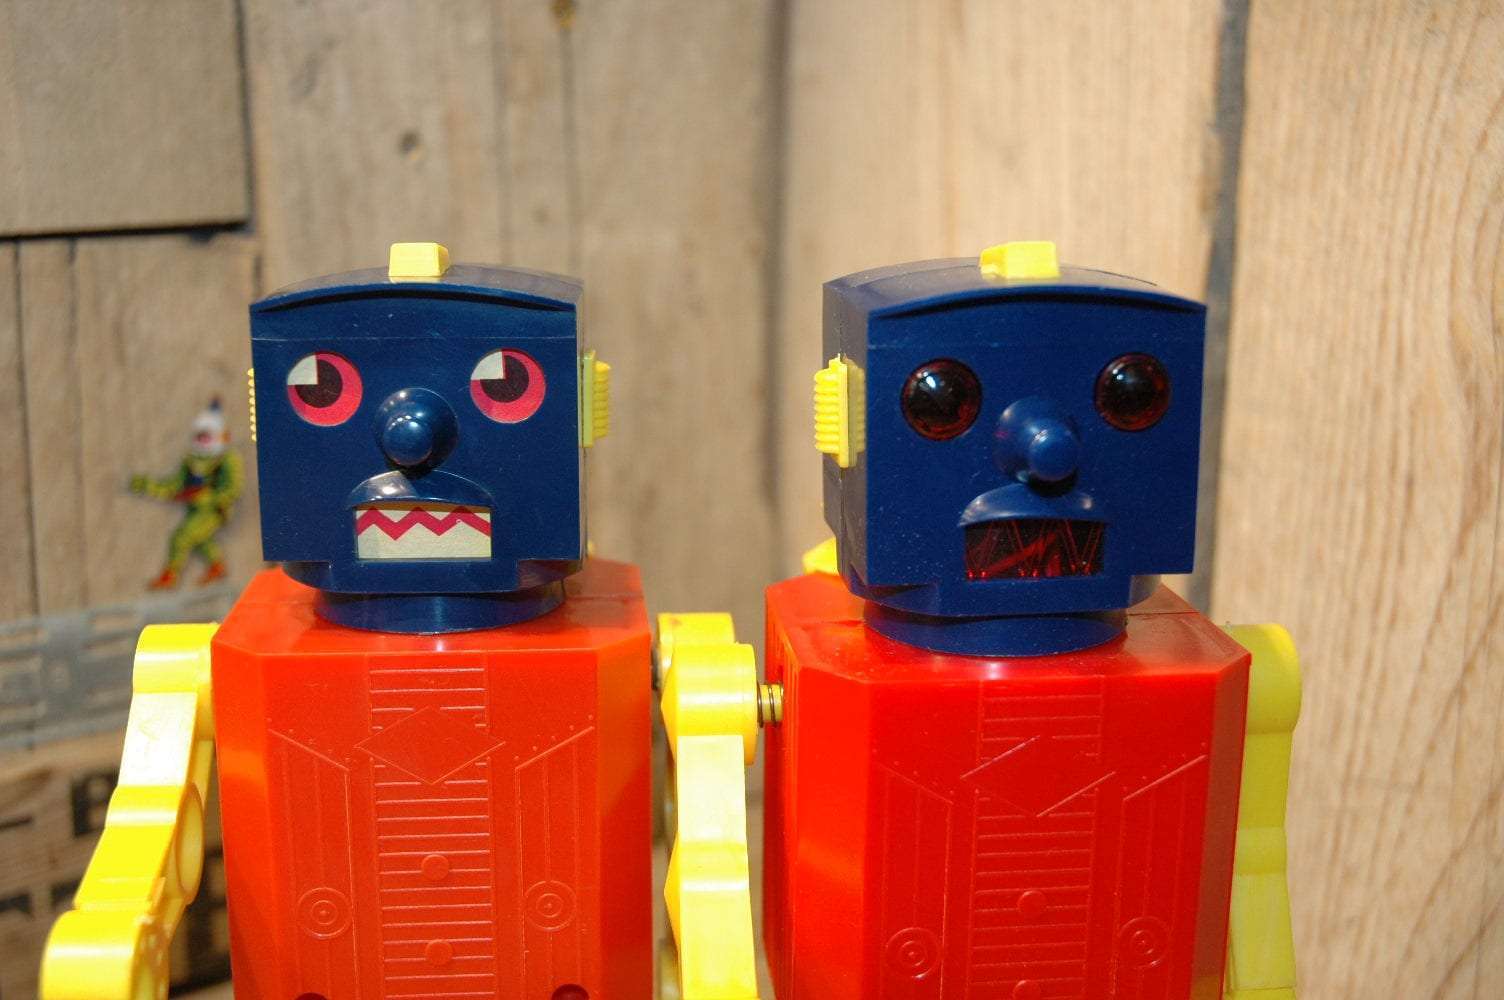 MorToys Hongkong - Robbie Robot